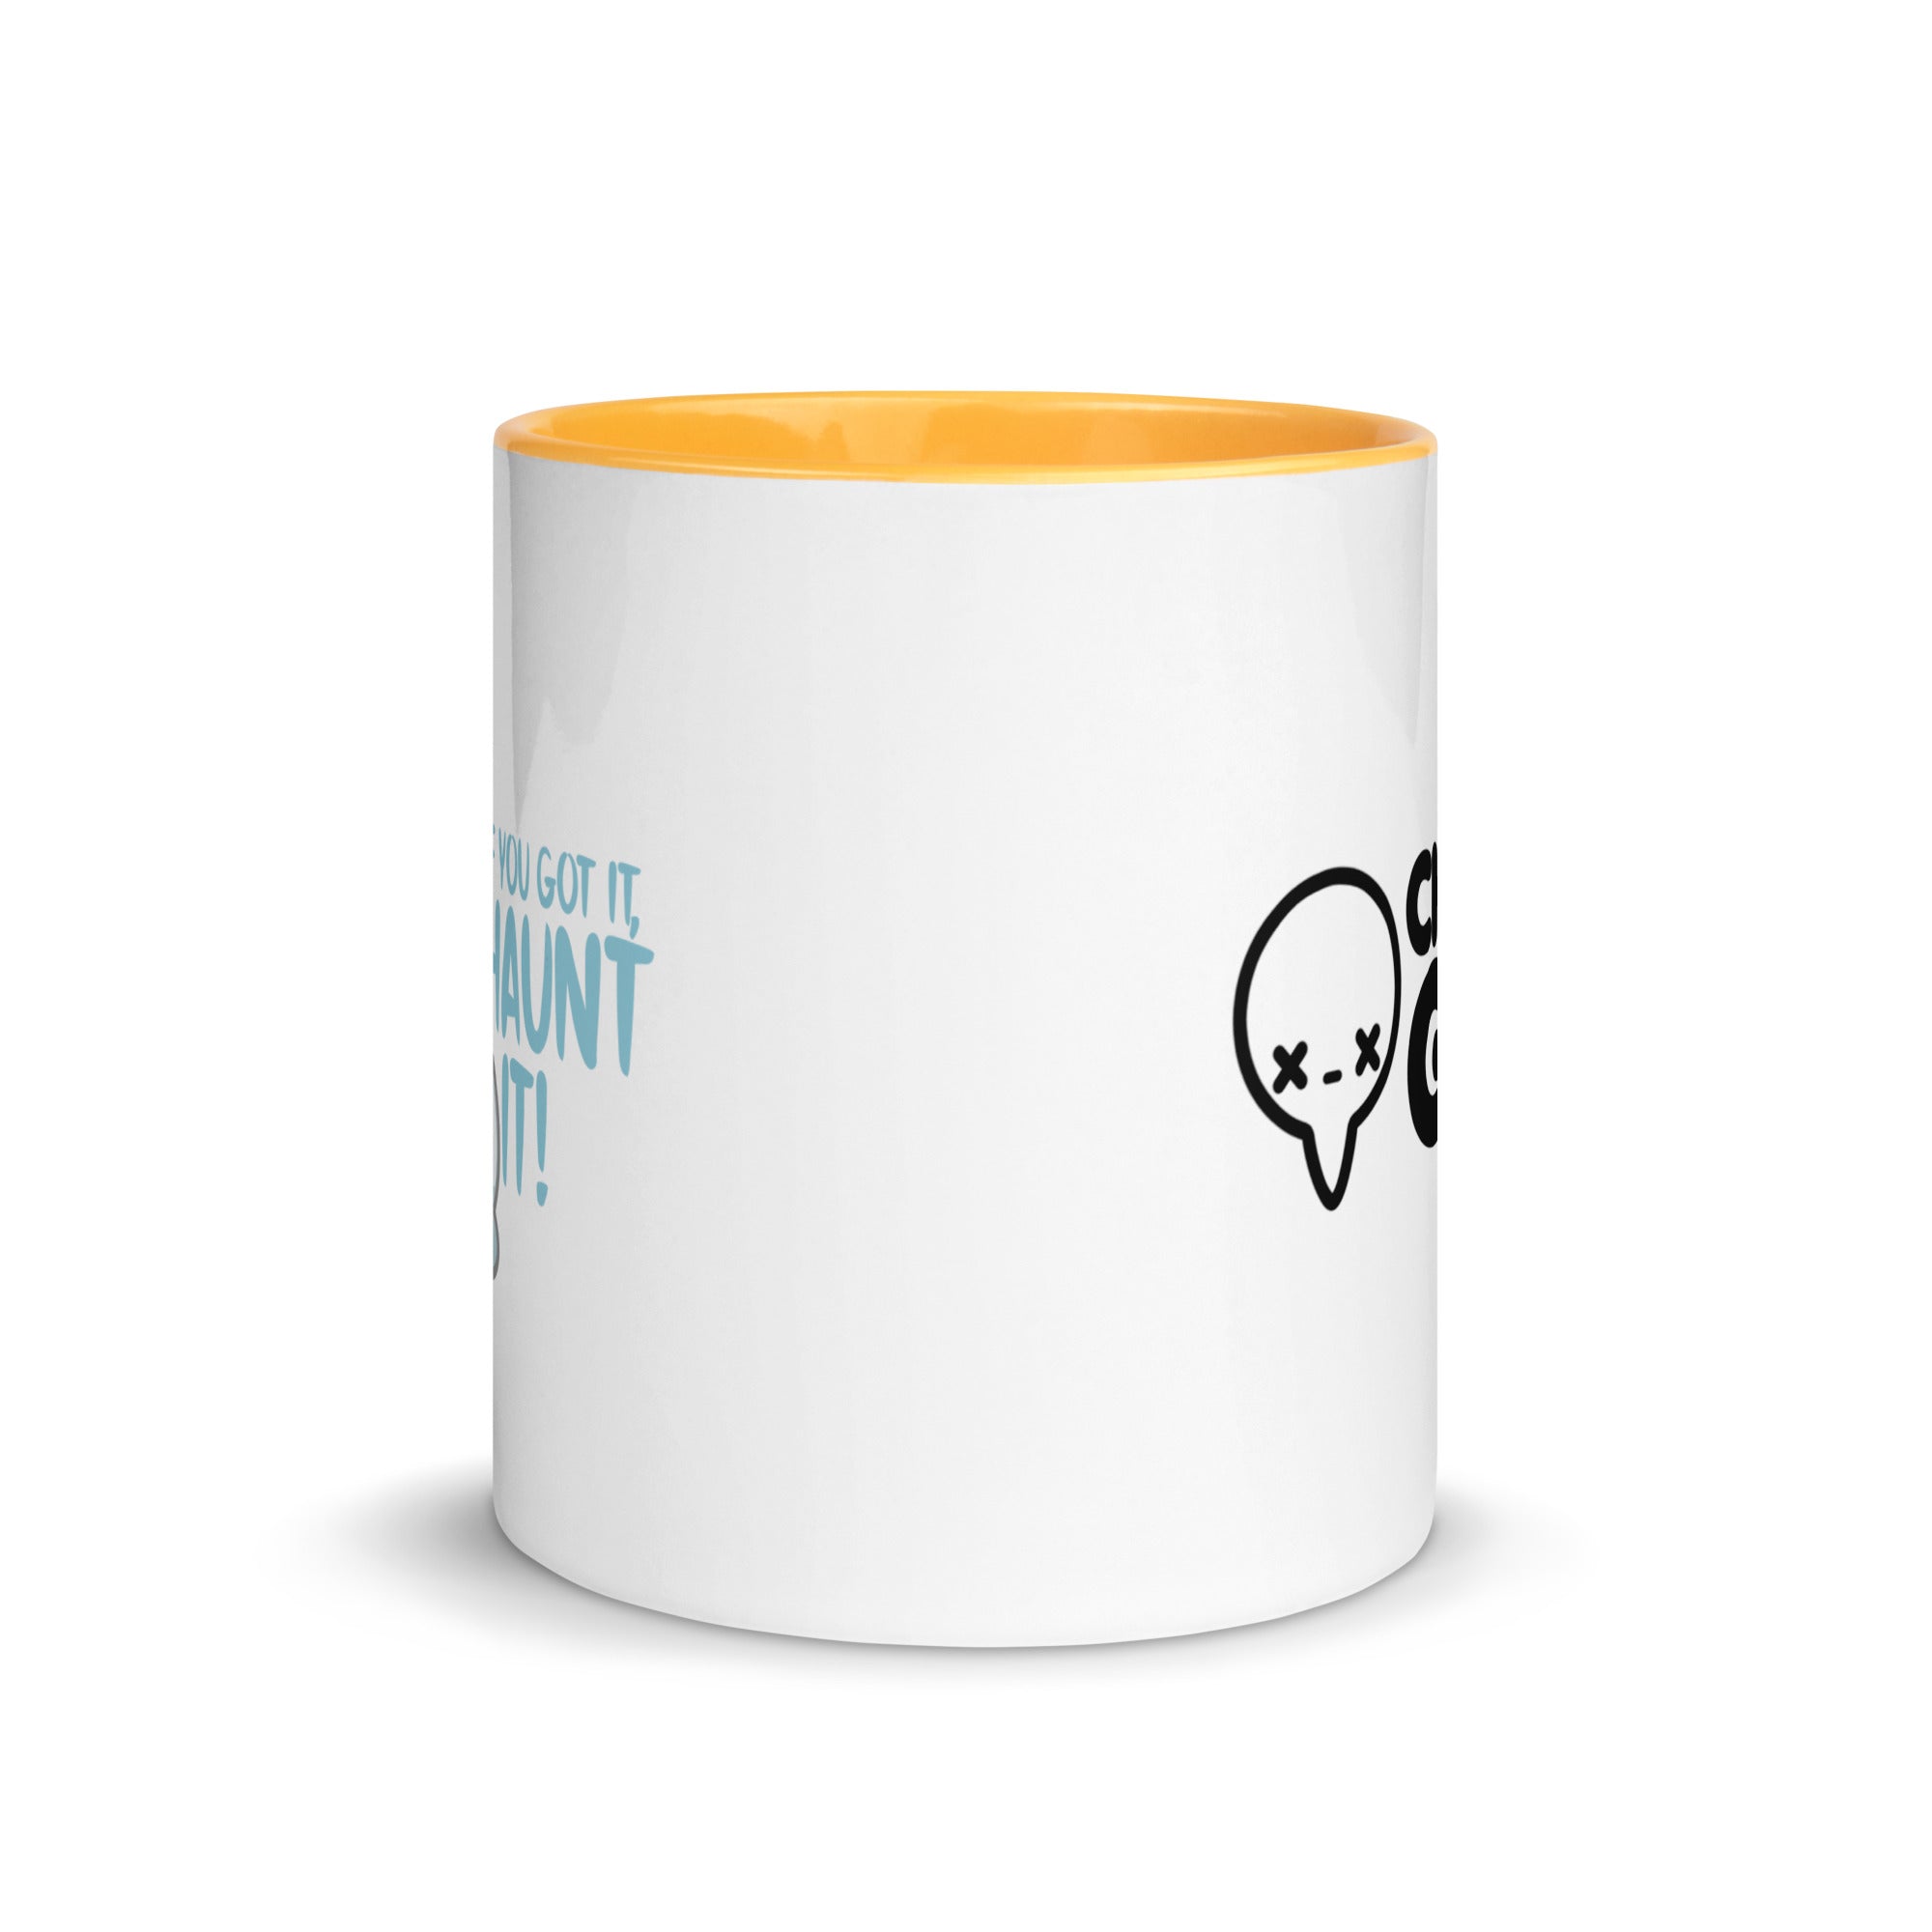 IF YOU GOT IT HAUNT IT - Mug with Color Inside - ChubbleGumLLC